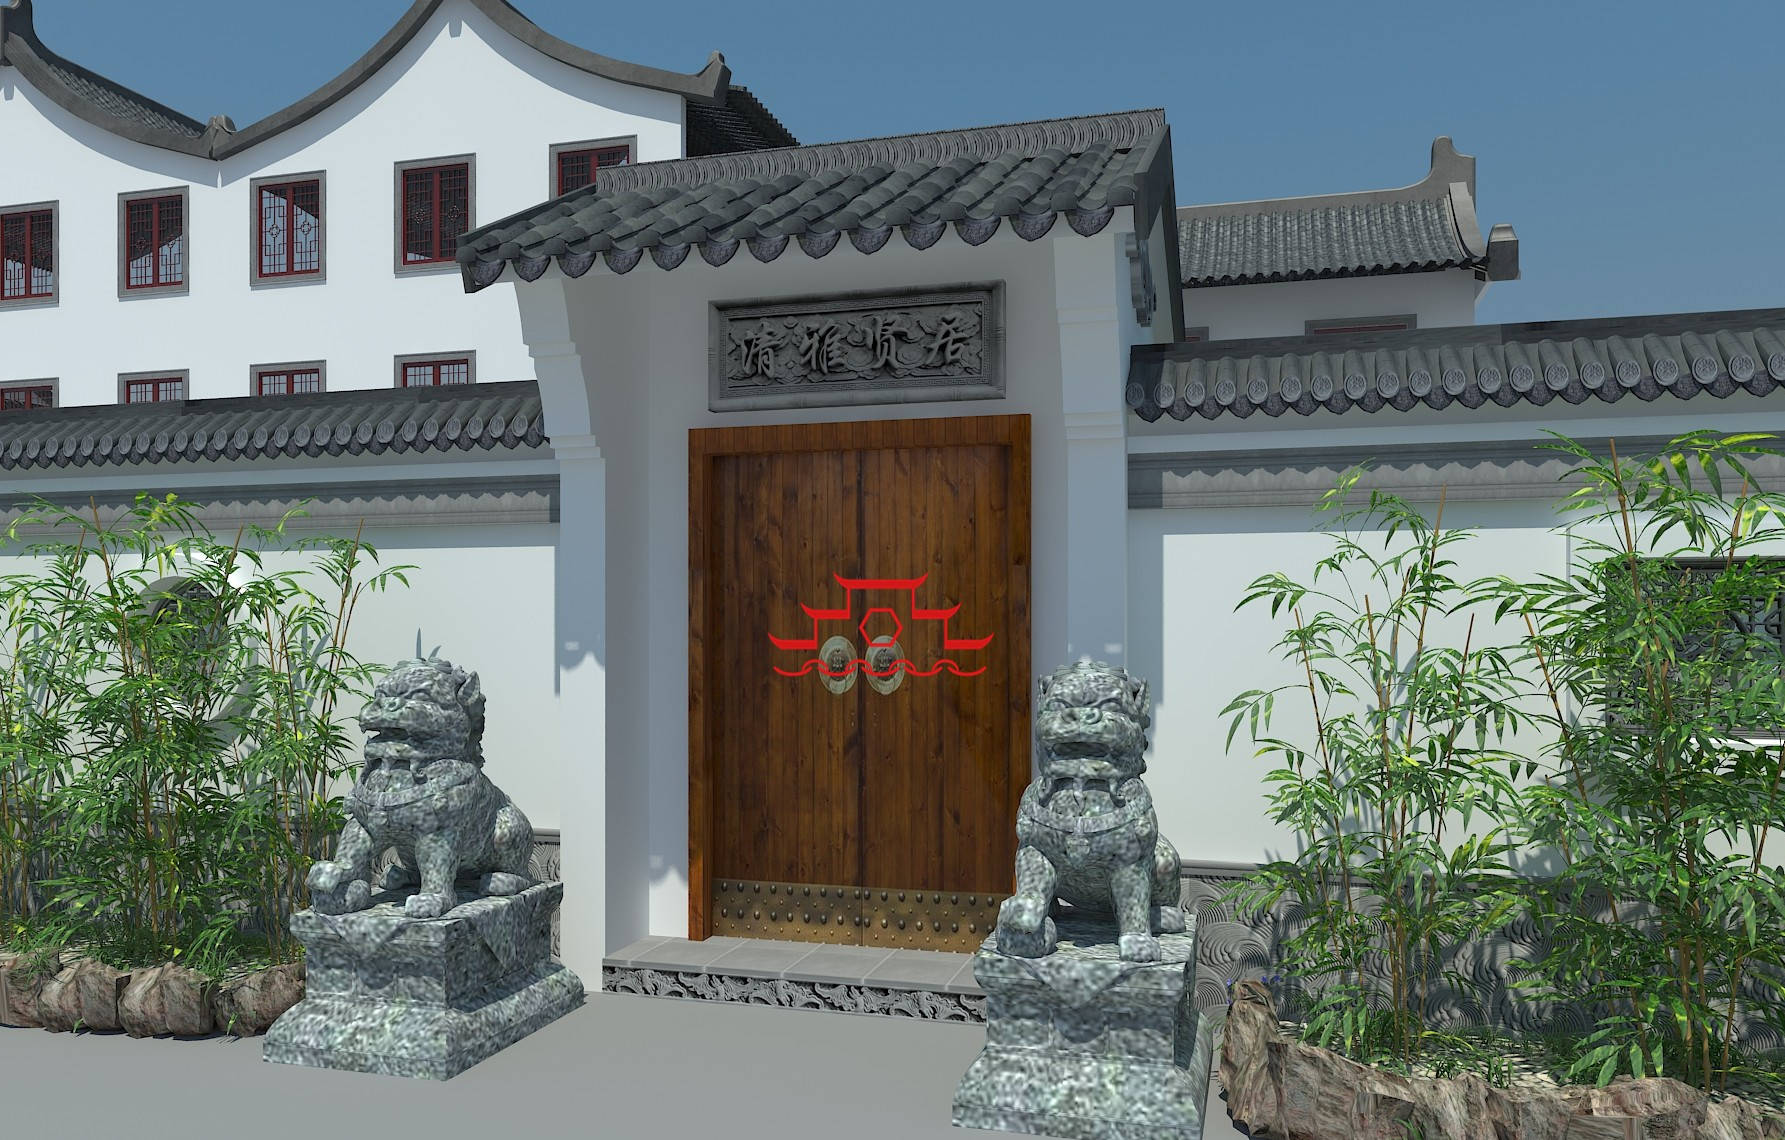 说起庭院改造,杭州这套中式仿古院子改造效果图可以作为参考.